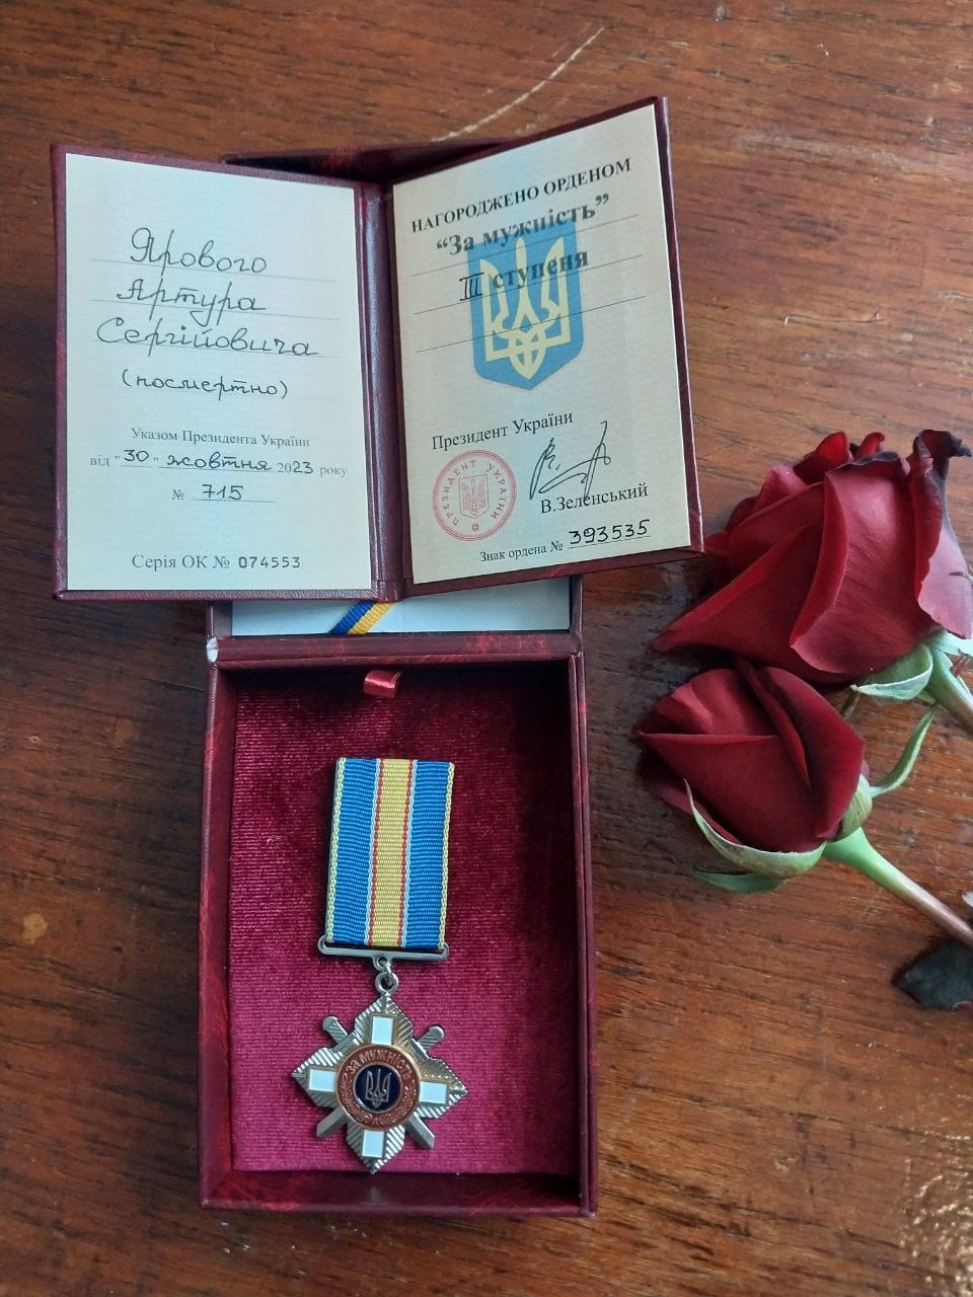 Матері загиблого Героя з Городківської громади вручили орден "За мужність"